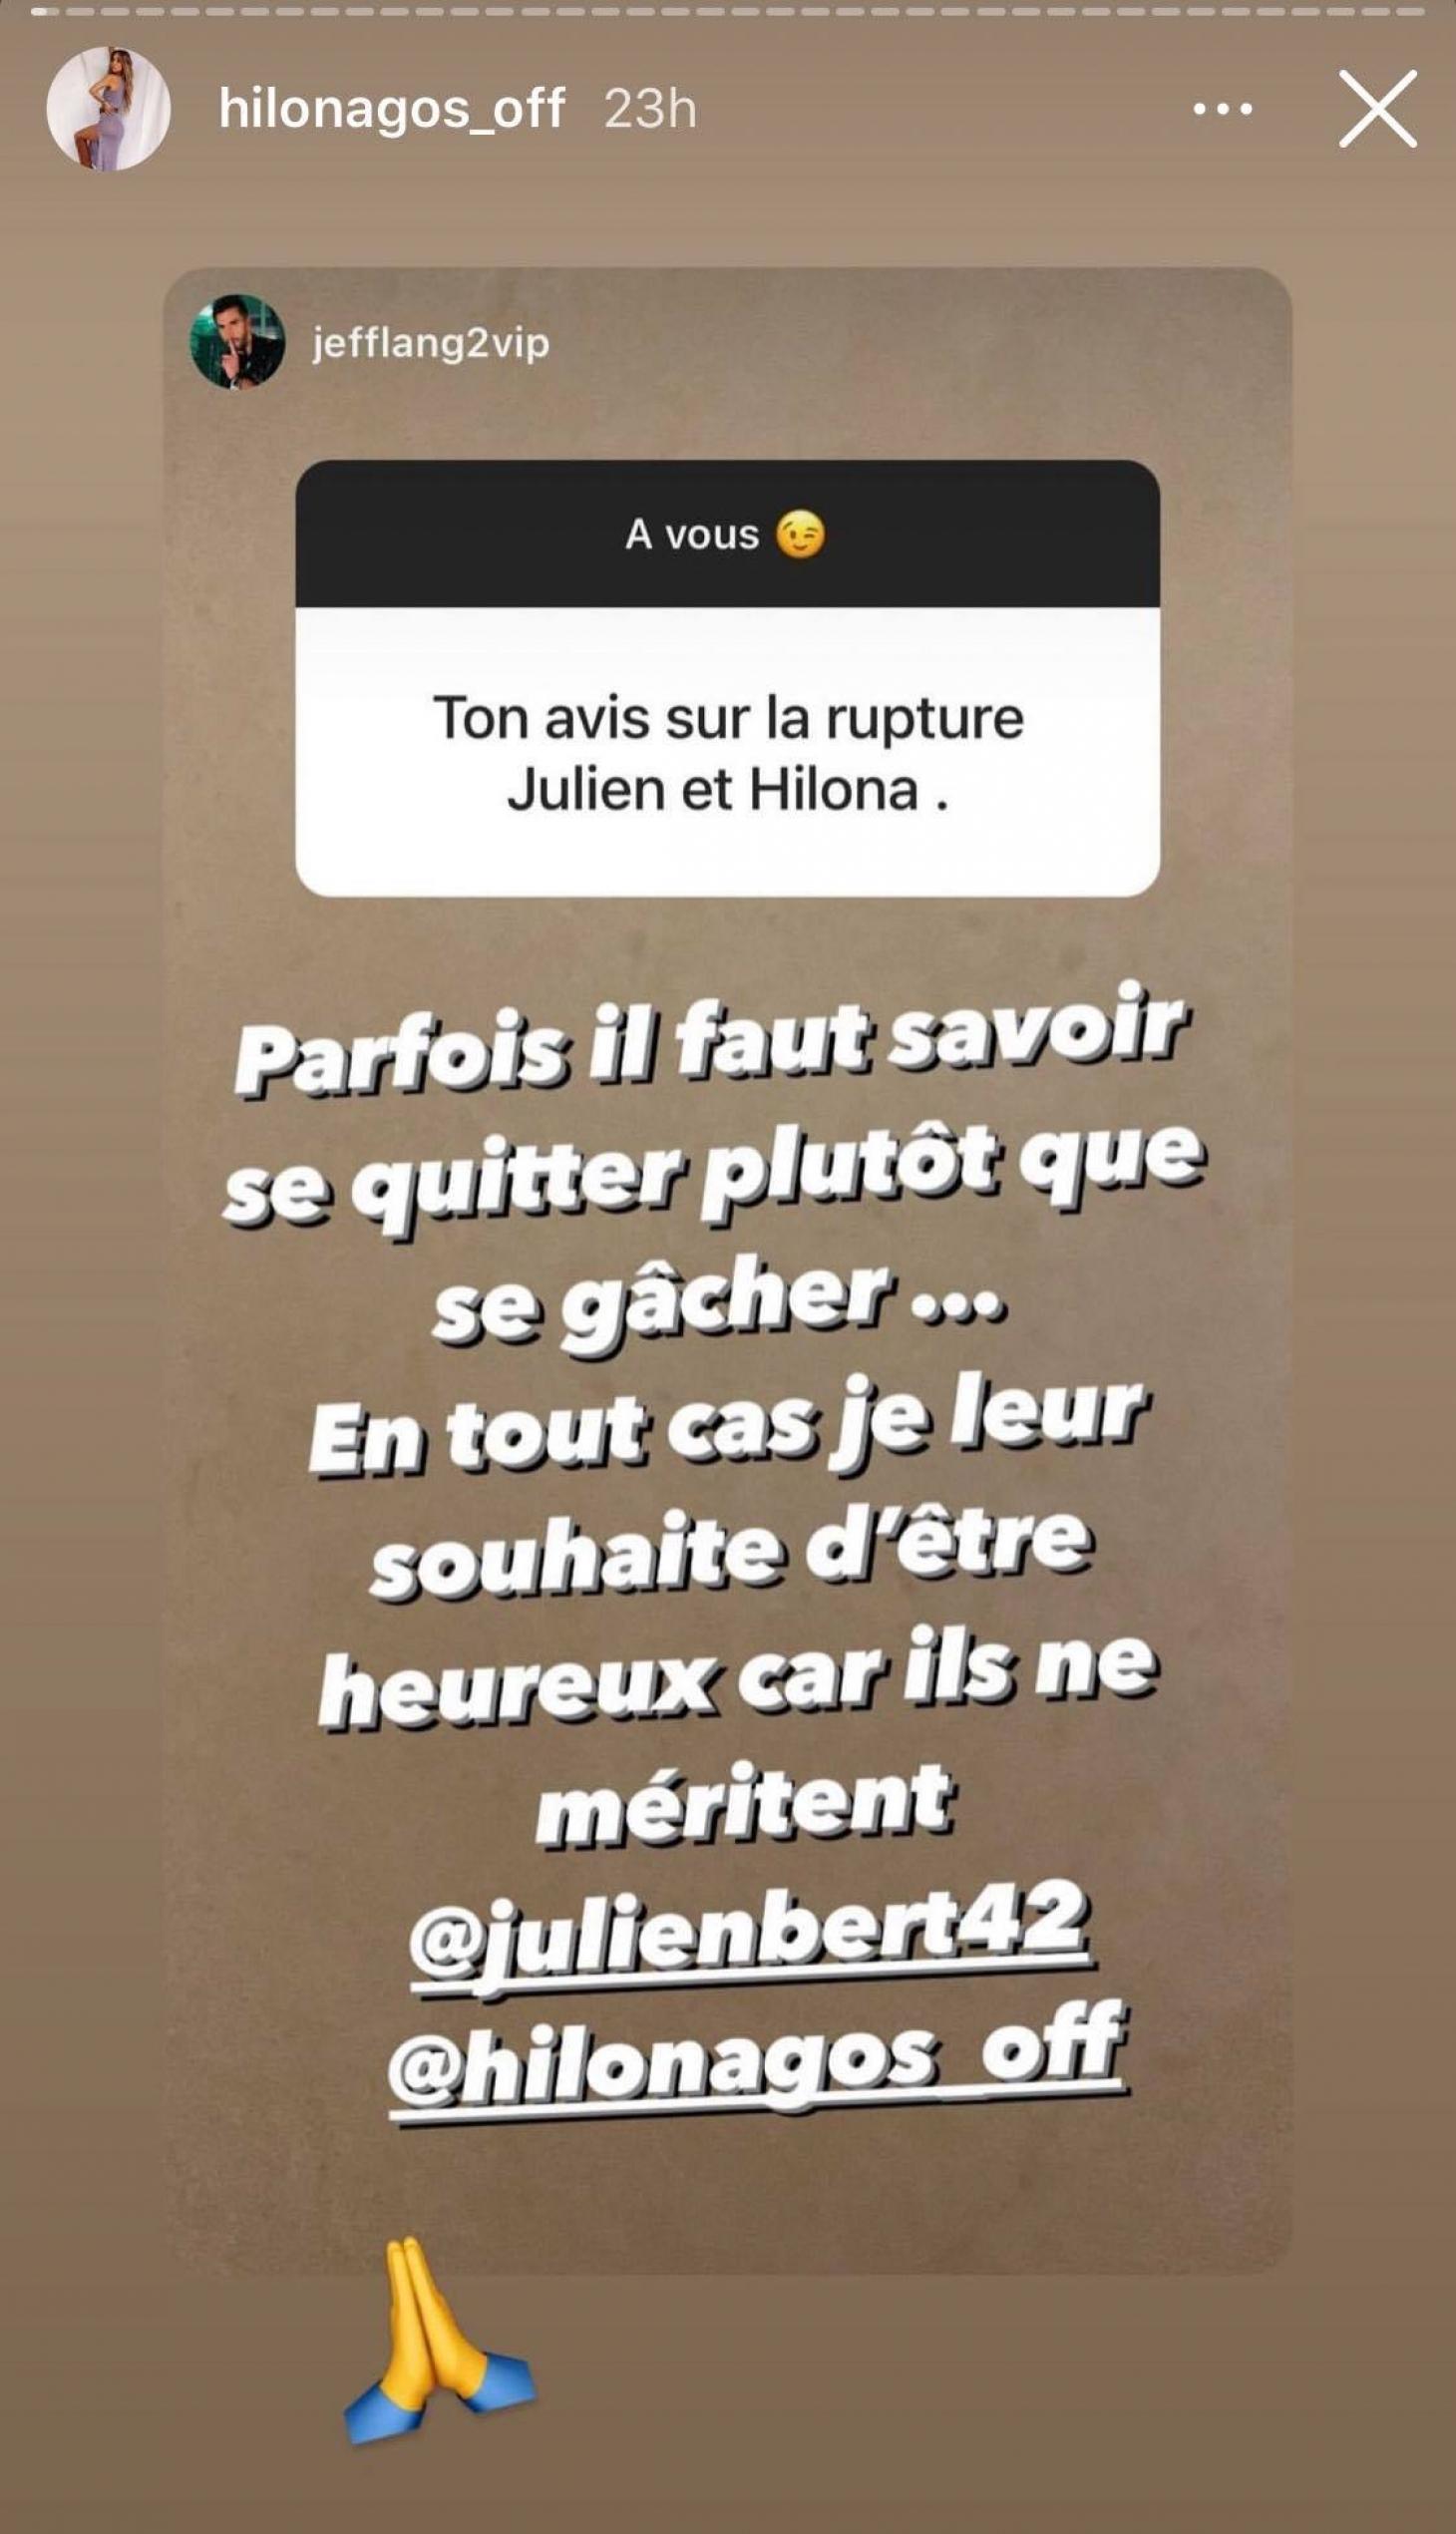  Julien Bert et Hilona Gos @ Instagram